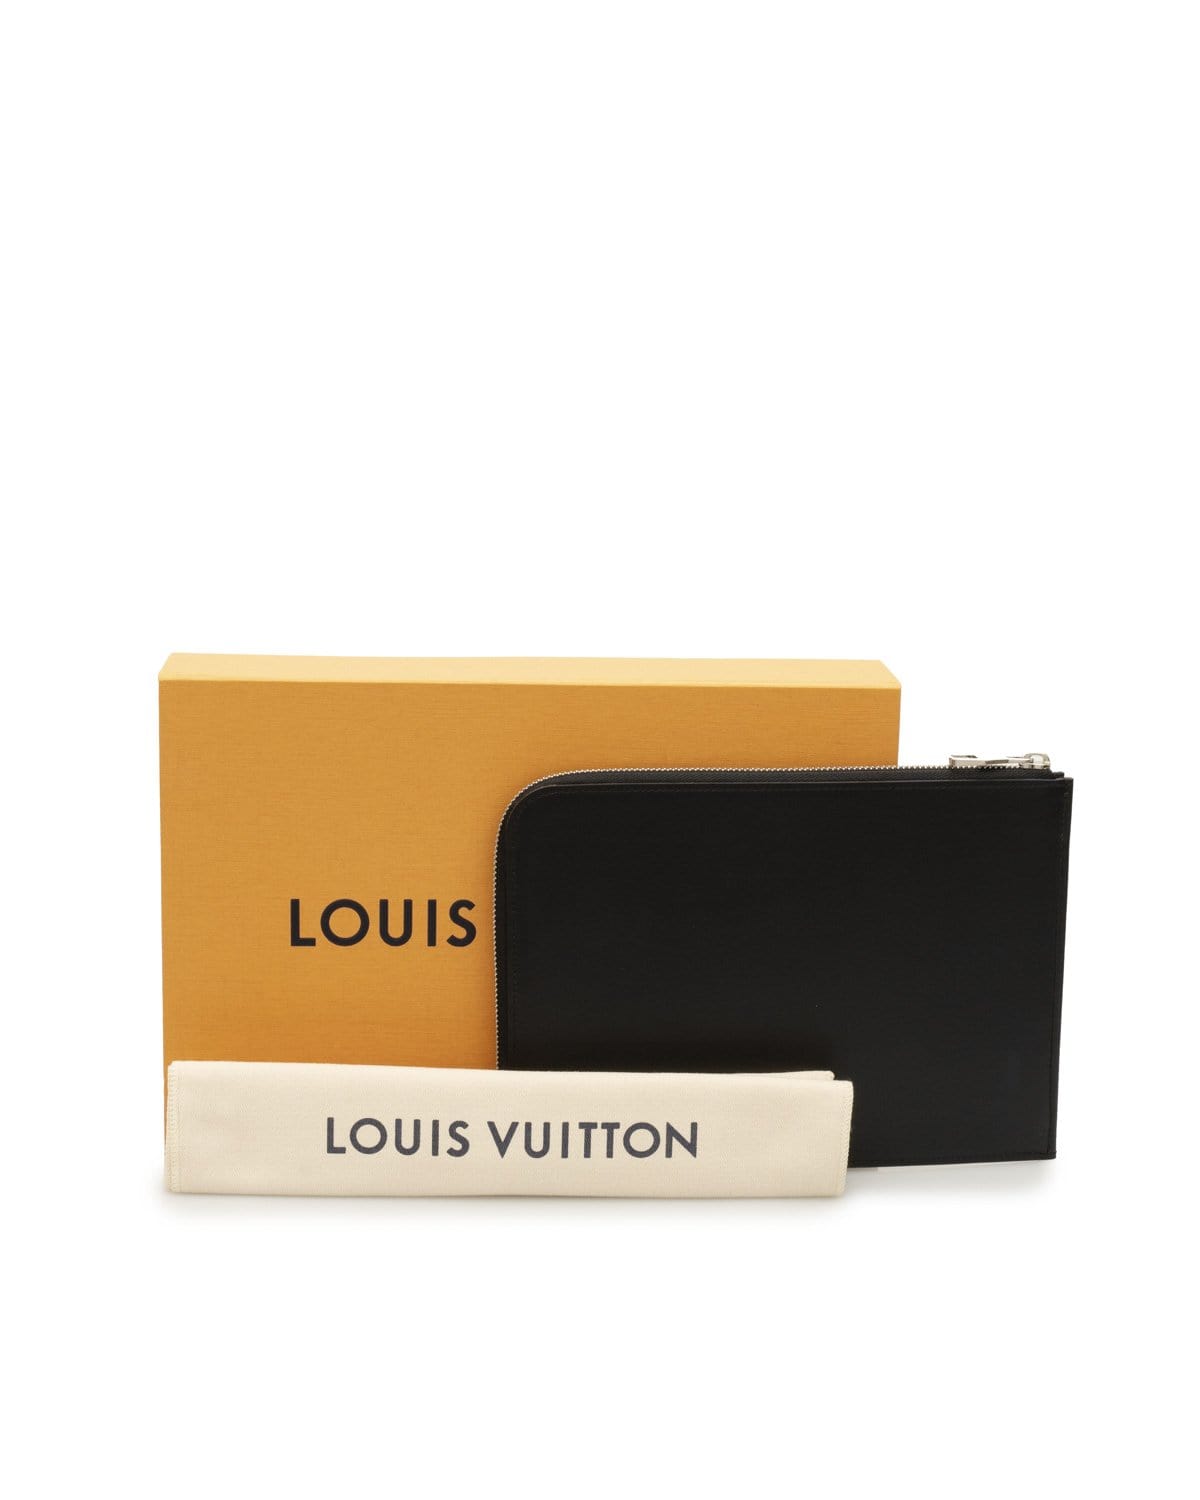 Louis Vuitton LOUIS VUITTON Nomade Pochette Jour PM Black Clutch Bag- AWL1904